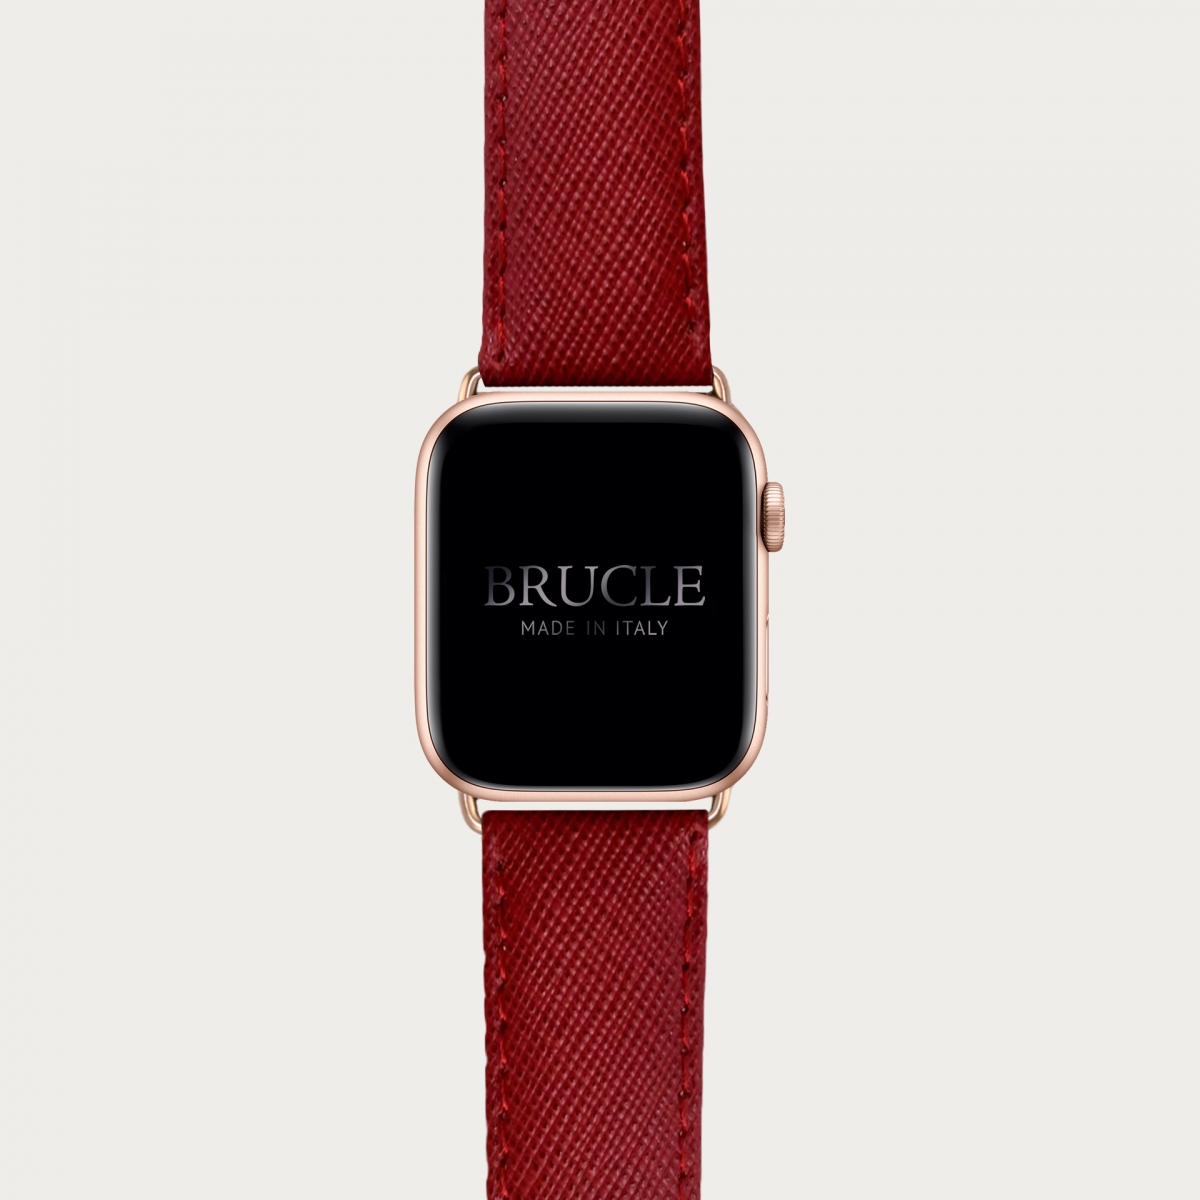 Cinturino rosso in pelle stampa Saffiano per orologio, Apple Watch e Samsung Galaxy Watch